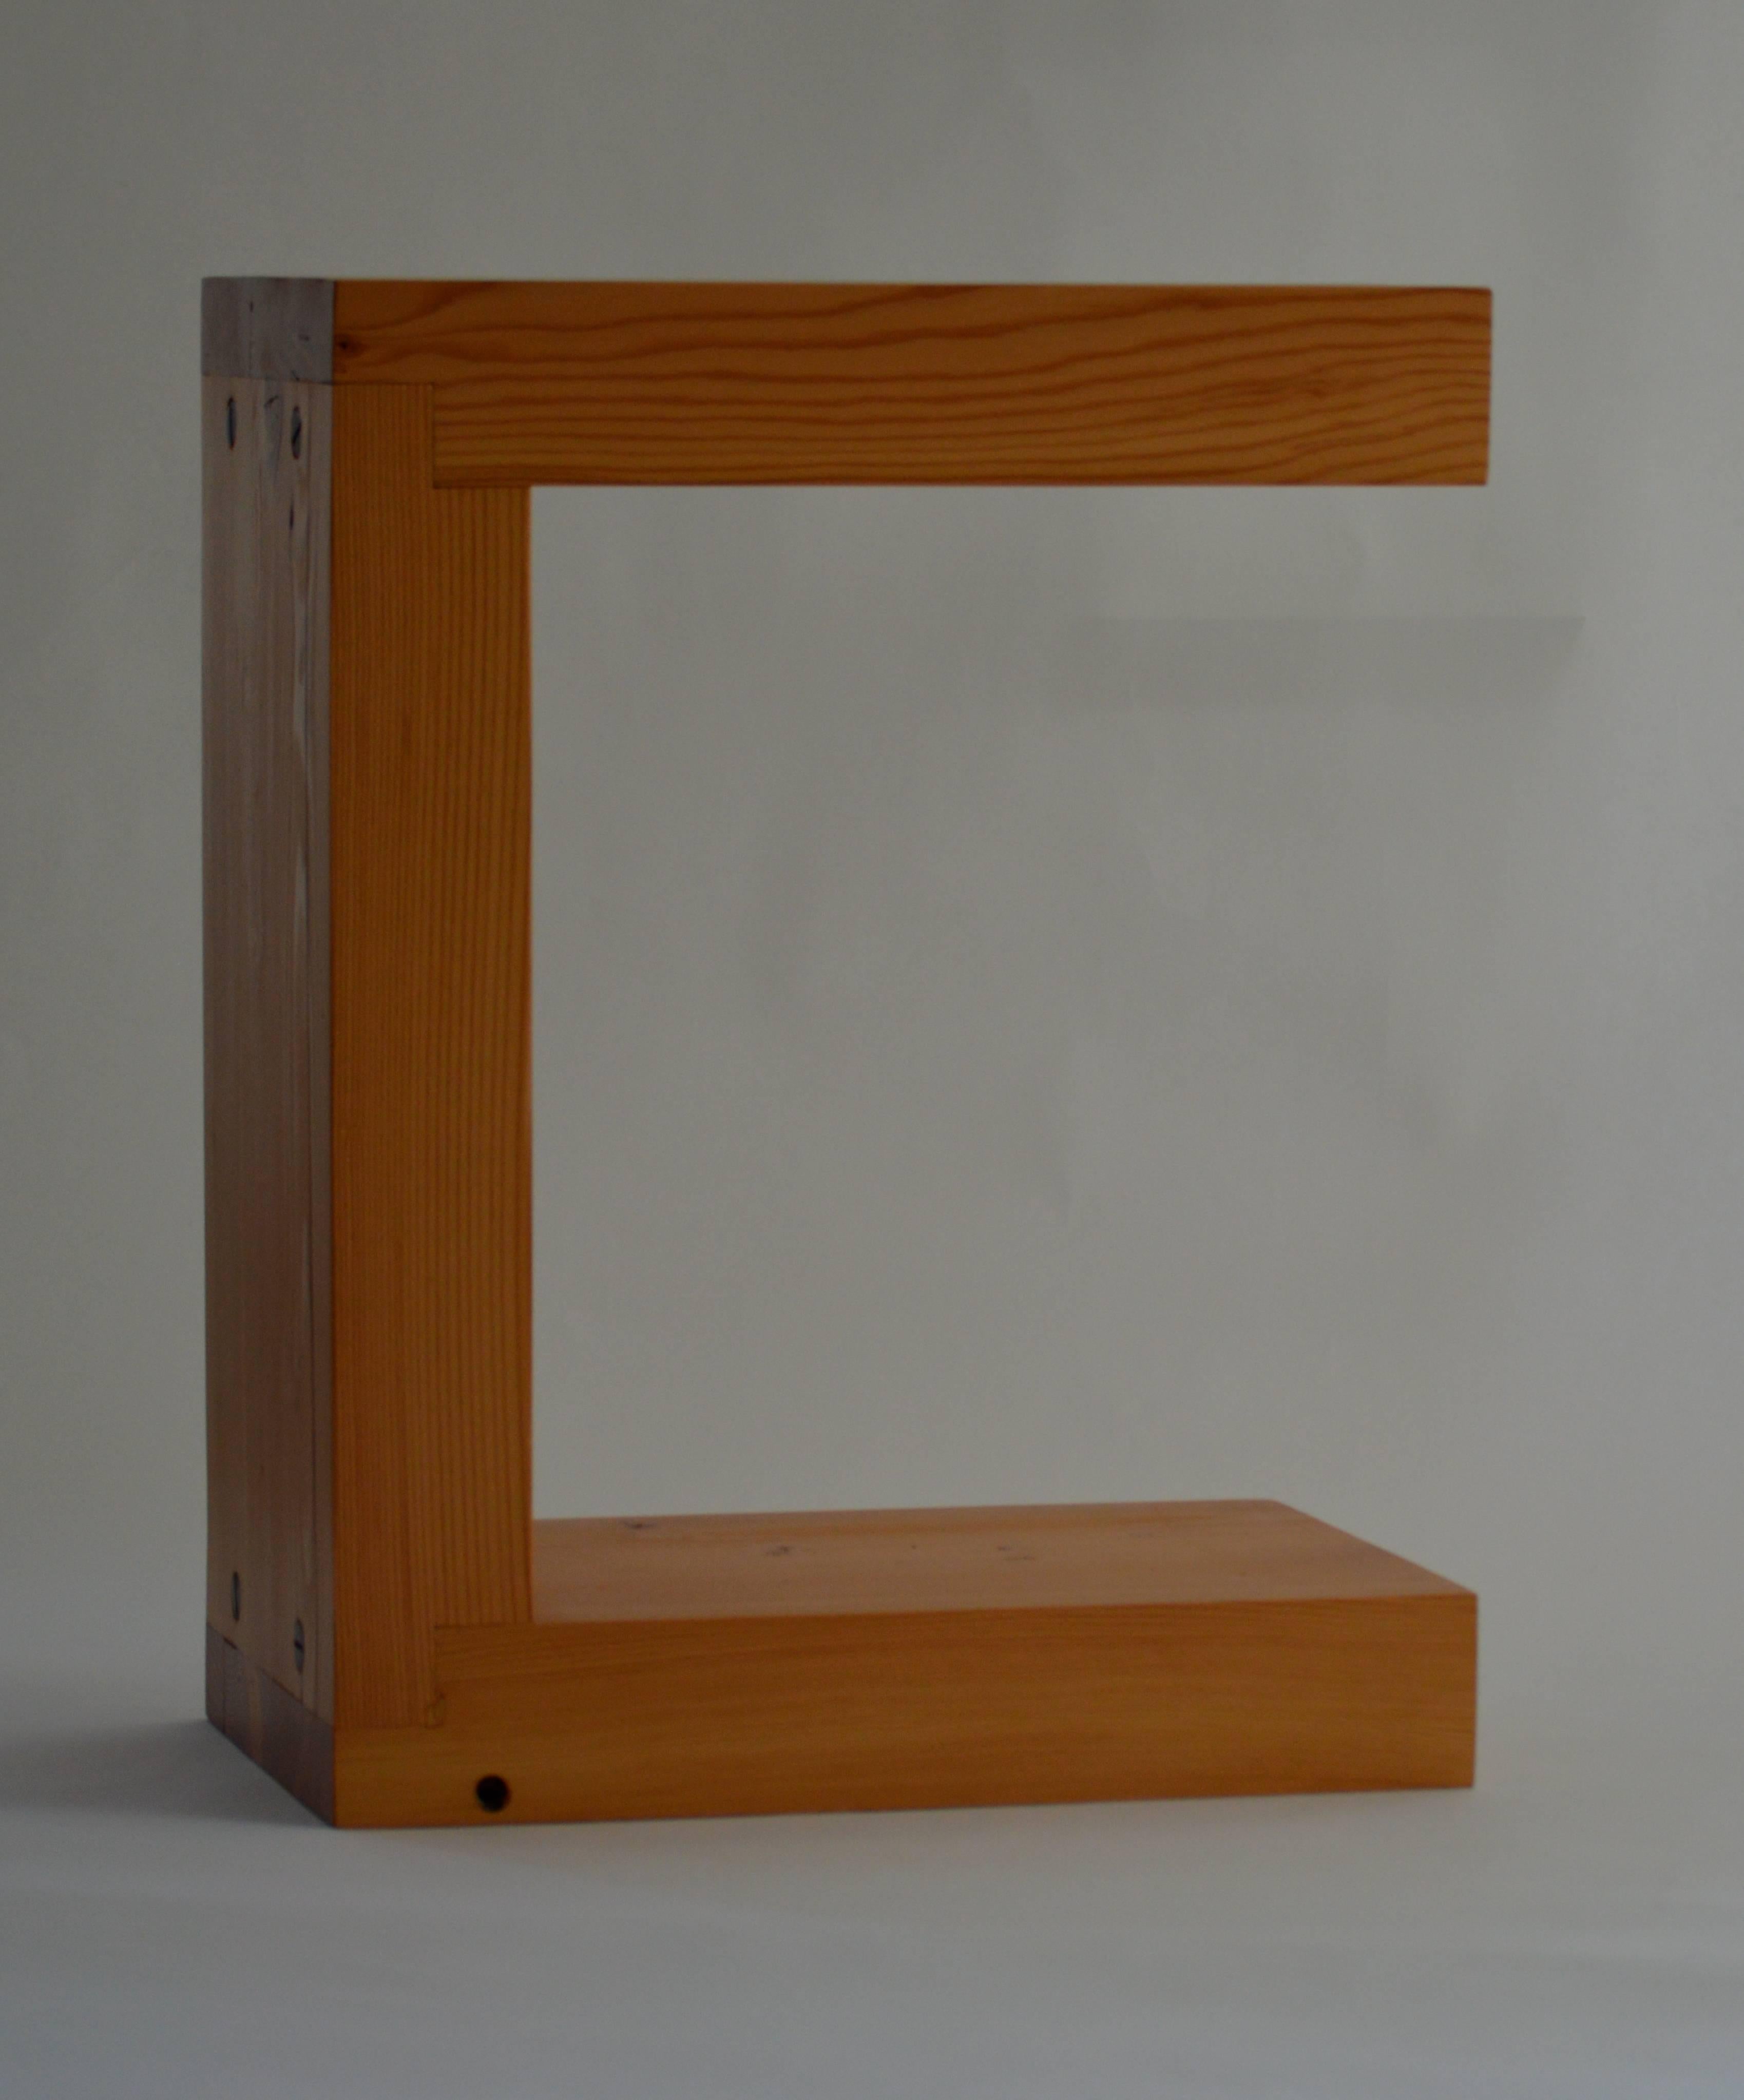 Der Fir End Table, ein Originaldesign, das exklusiv von Vermontica angeboten wird, ist ein moderner, minimalistischer Sitz- oder Beistelltisch, der von Scott Gordon in Vermont entworfen und hergestellt wird. Das aus 3